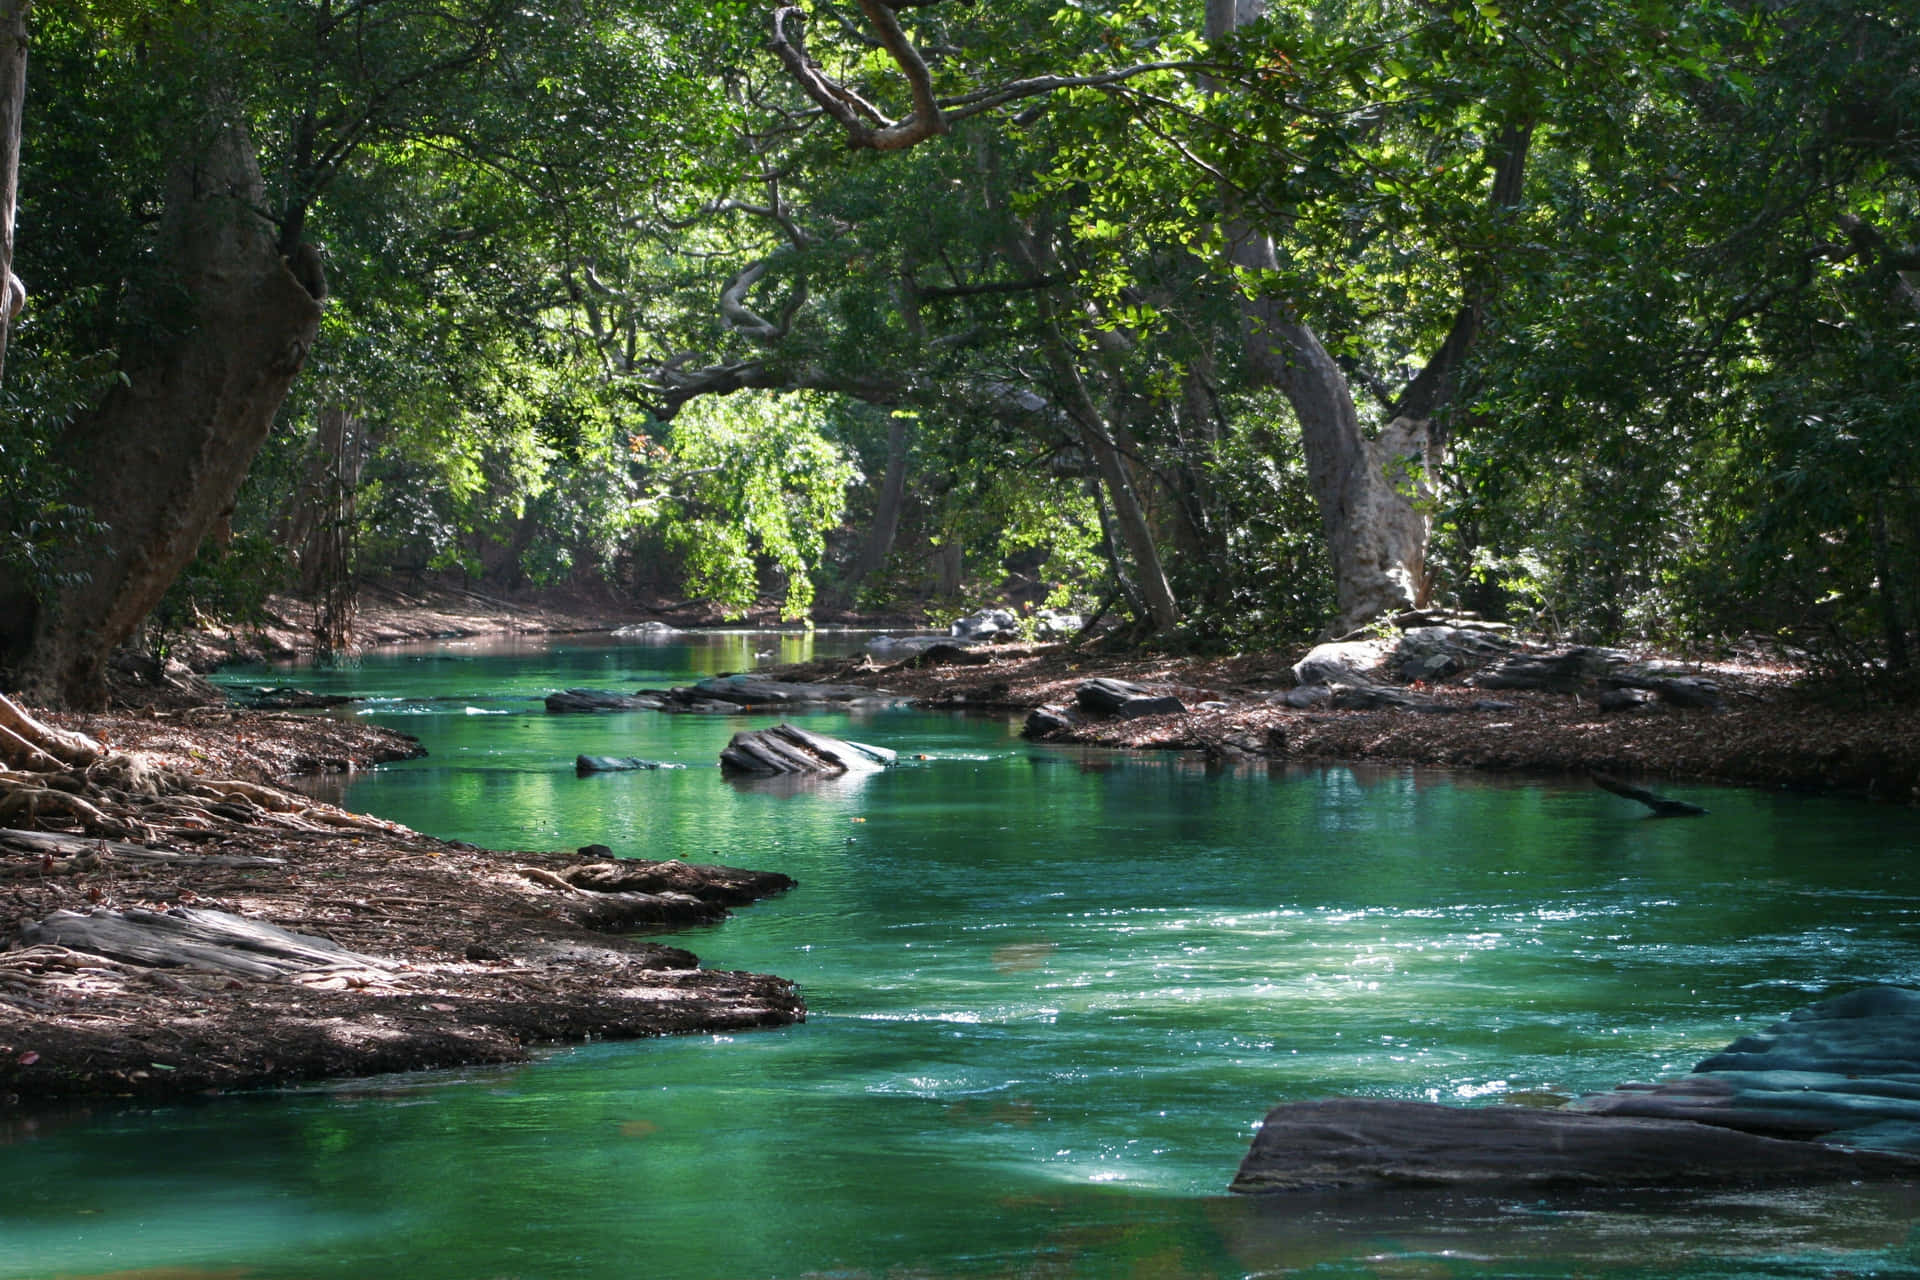 Unavista Refrescante: Un Río Relajante Rodeado De Vegetación Natural.